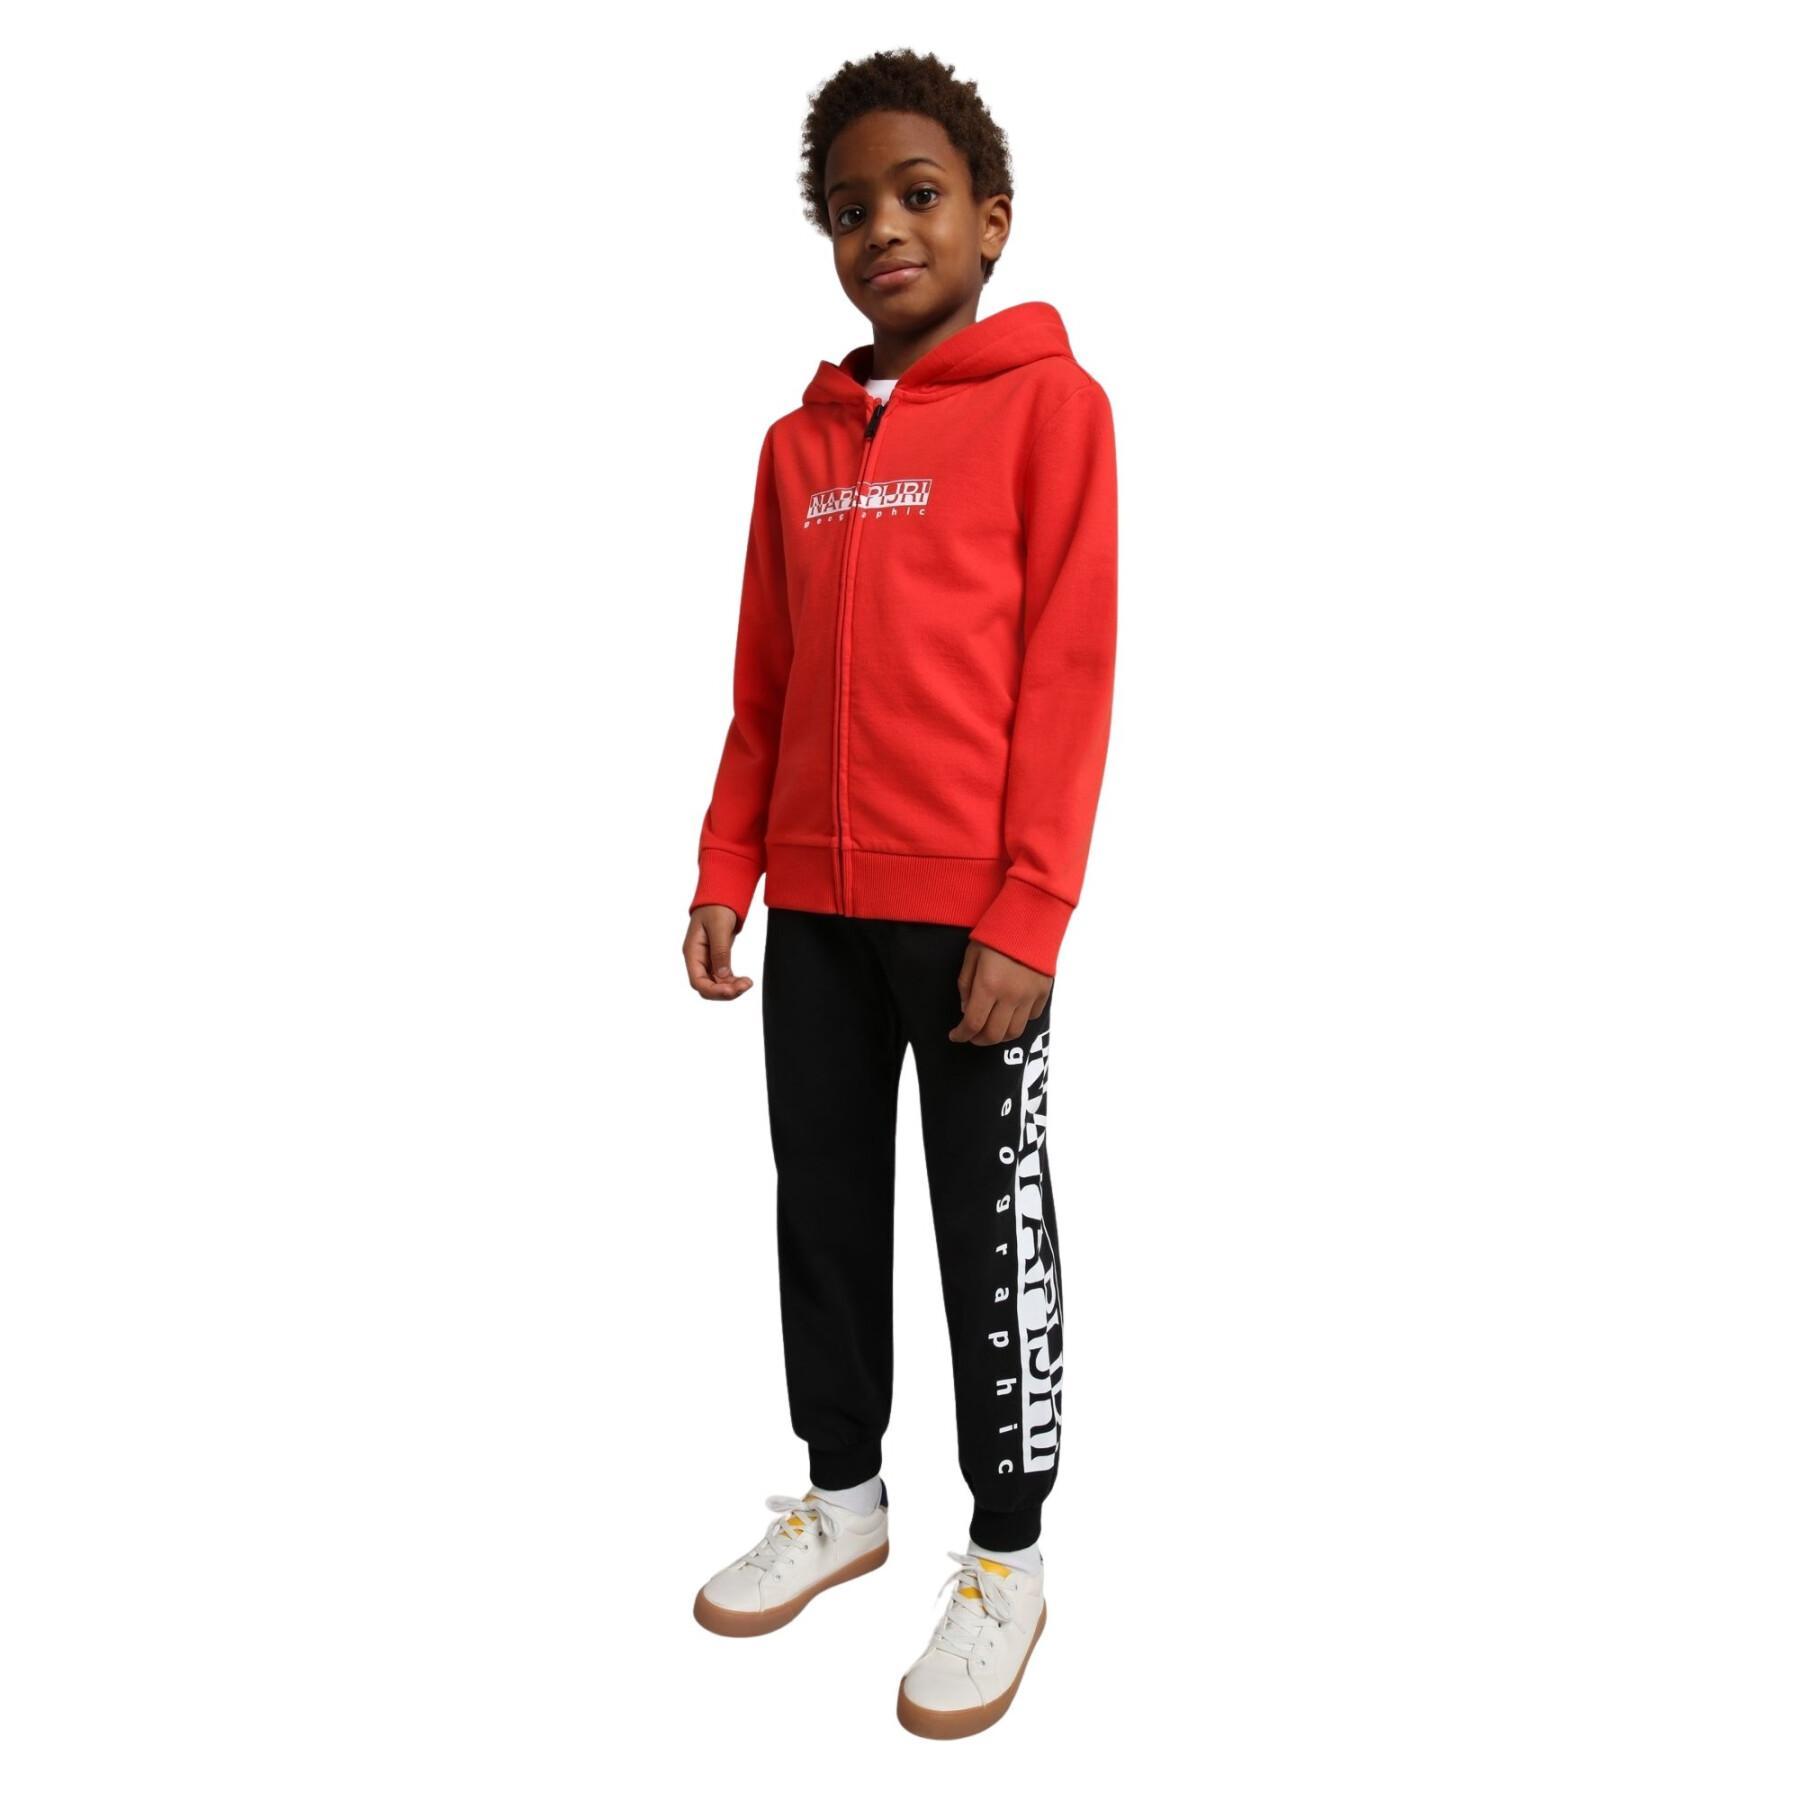 Children's jogging suit Napapijri M-Entremont